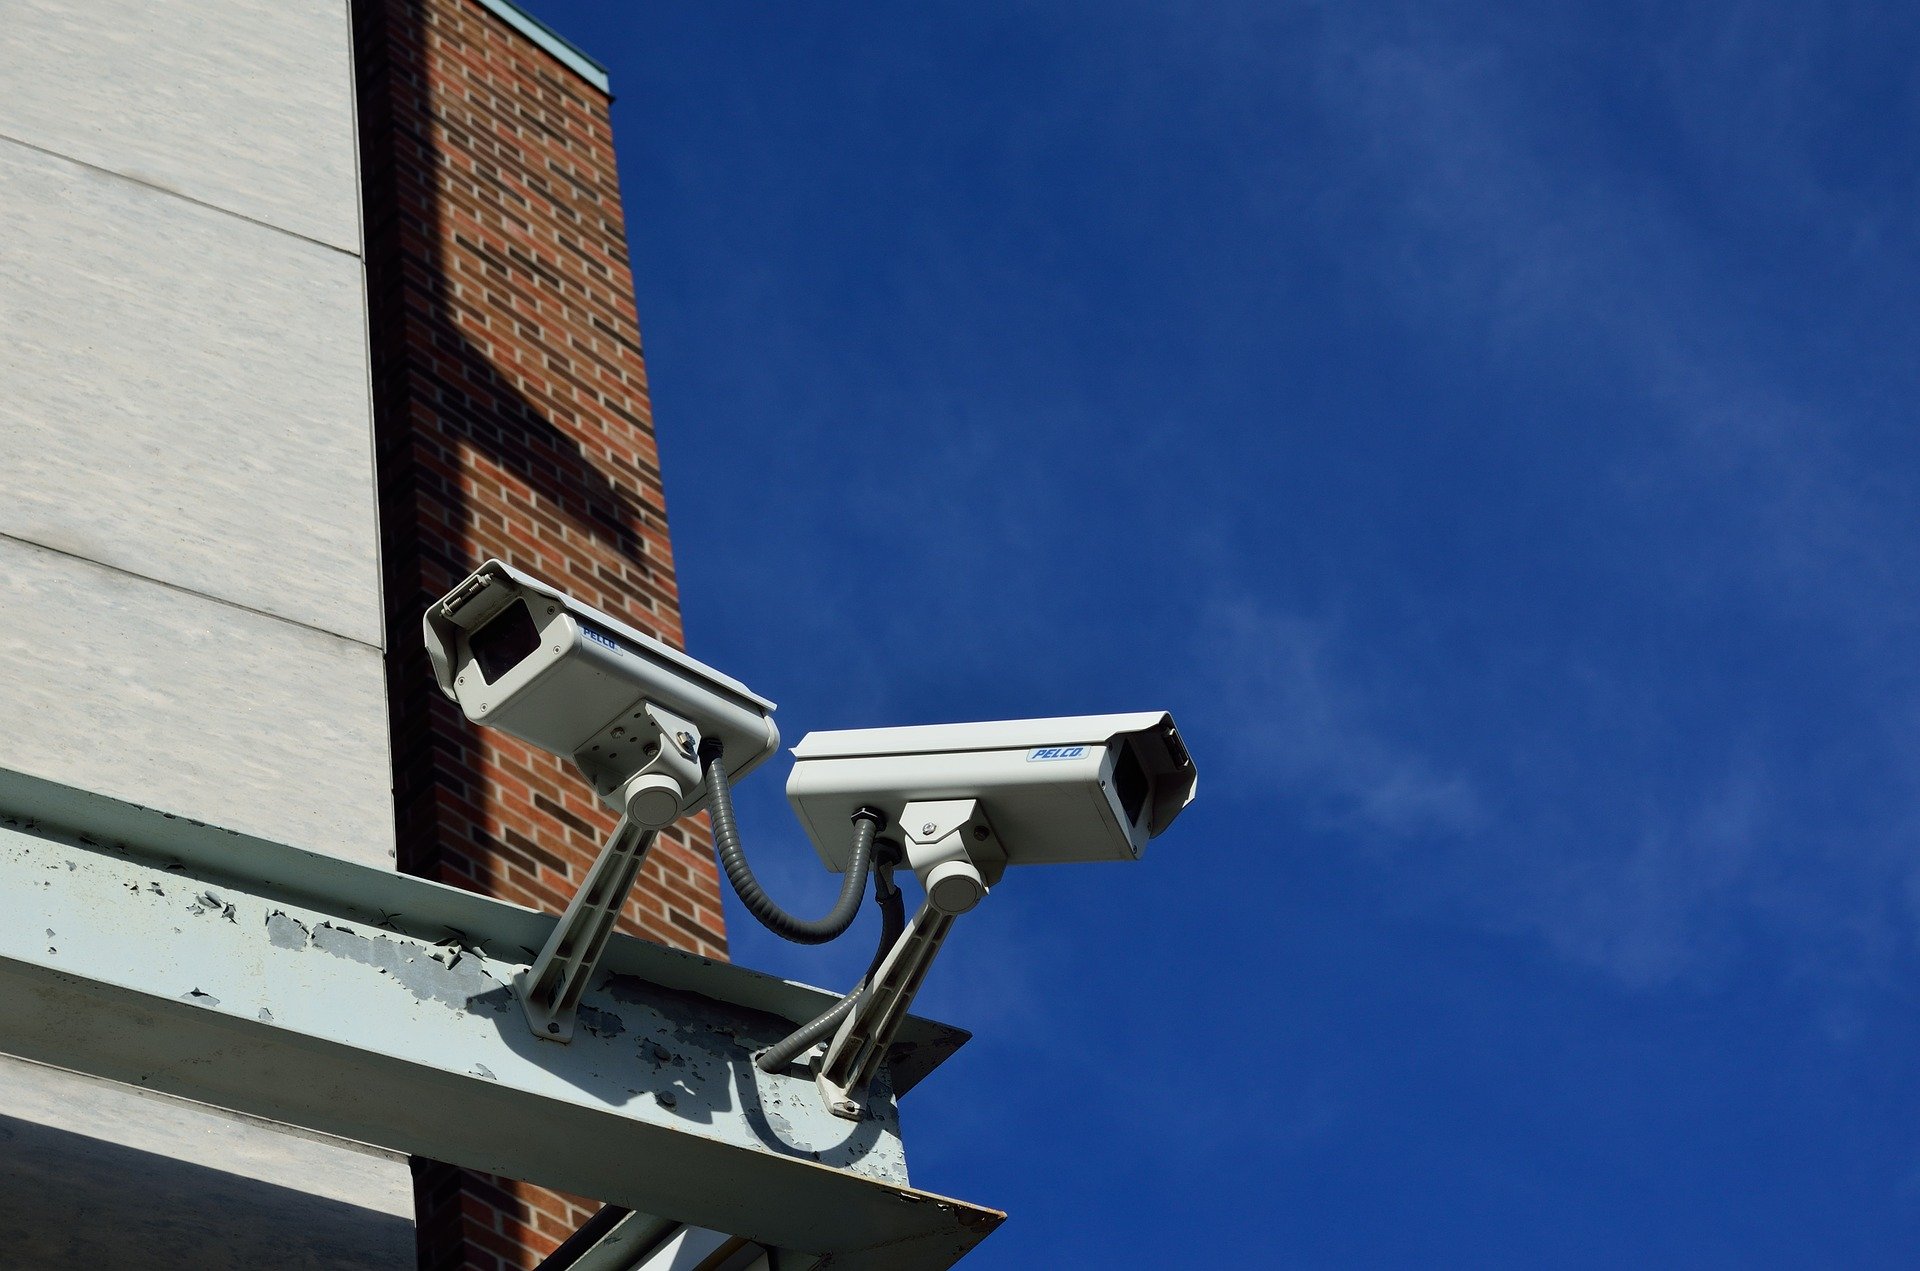 Cámaras de vigilancia para coche: qué dice la normativa actual